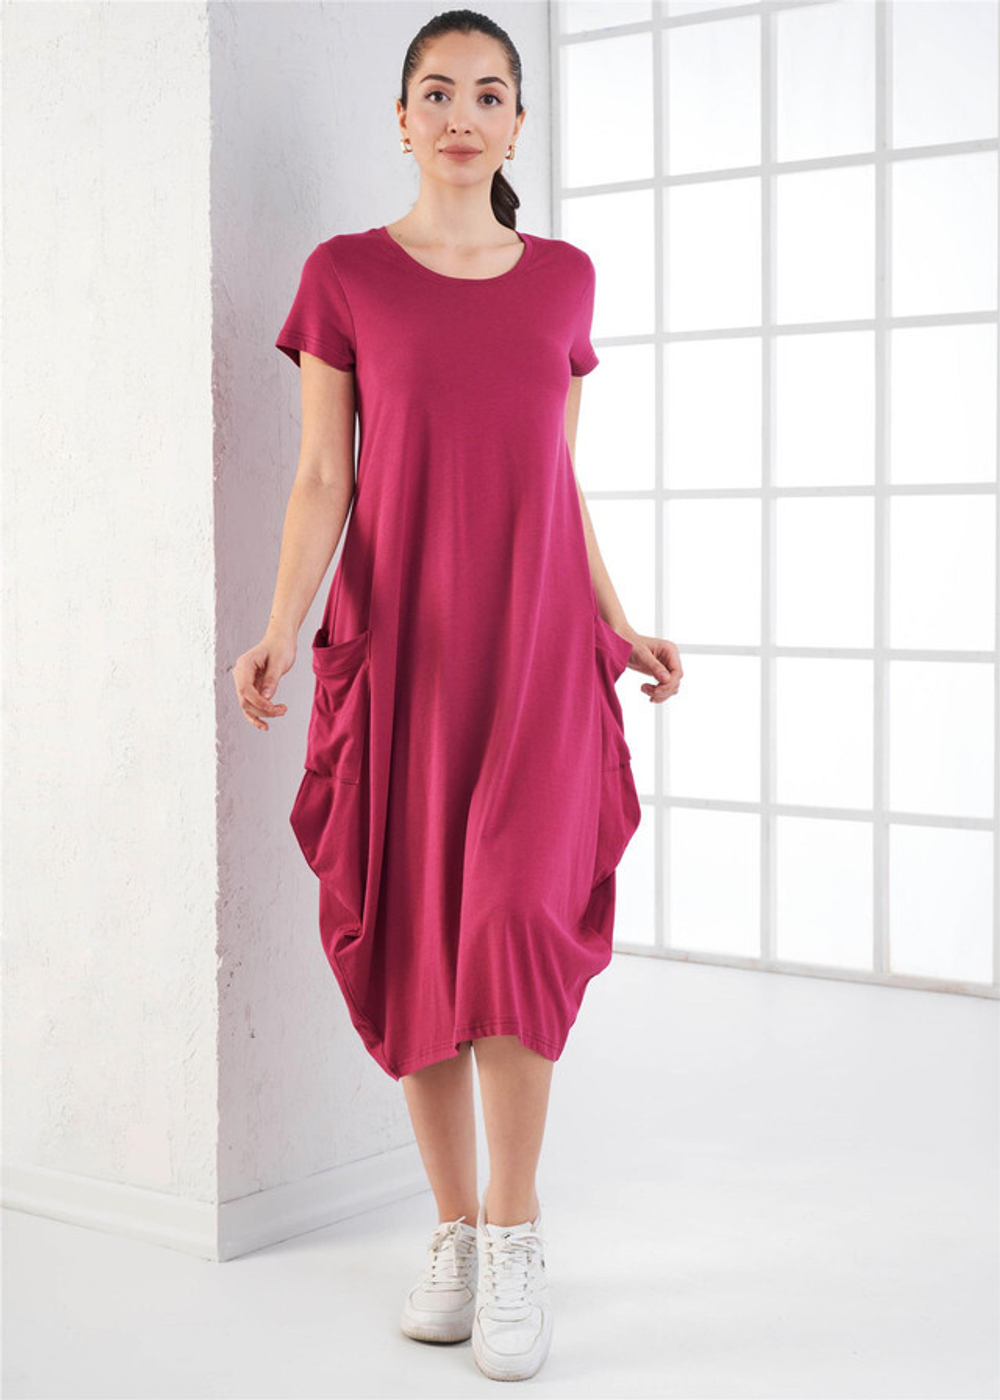 RELAX MODE / Платье женское летнее баллон повседневное оверсайз - 45094